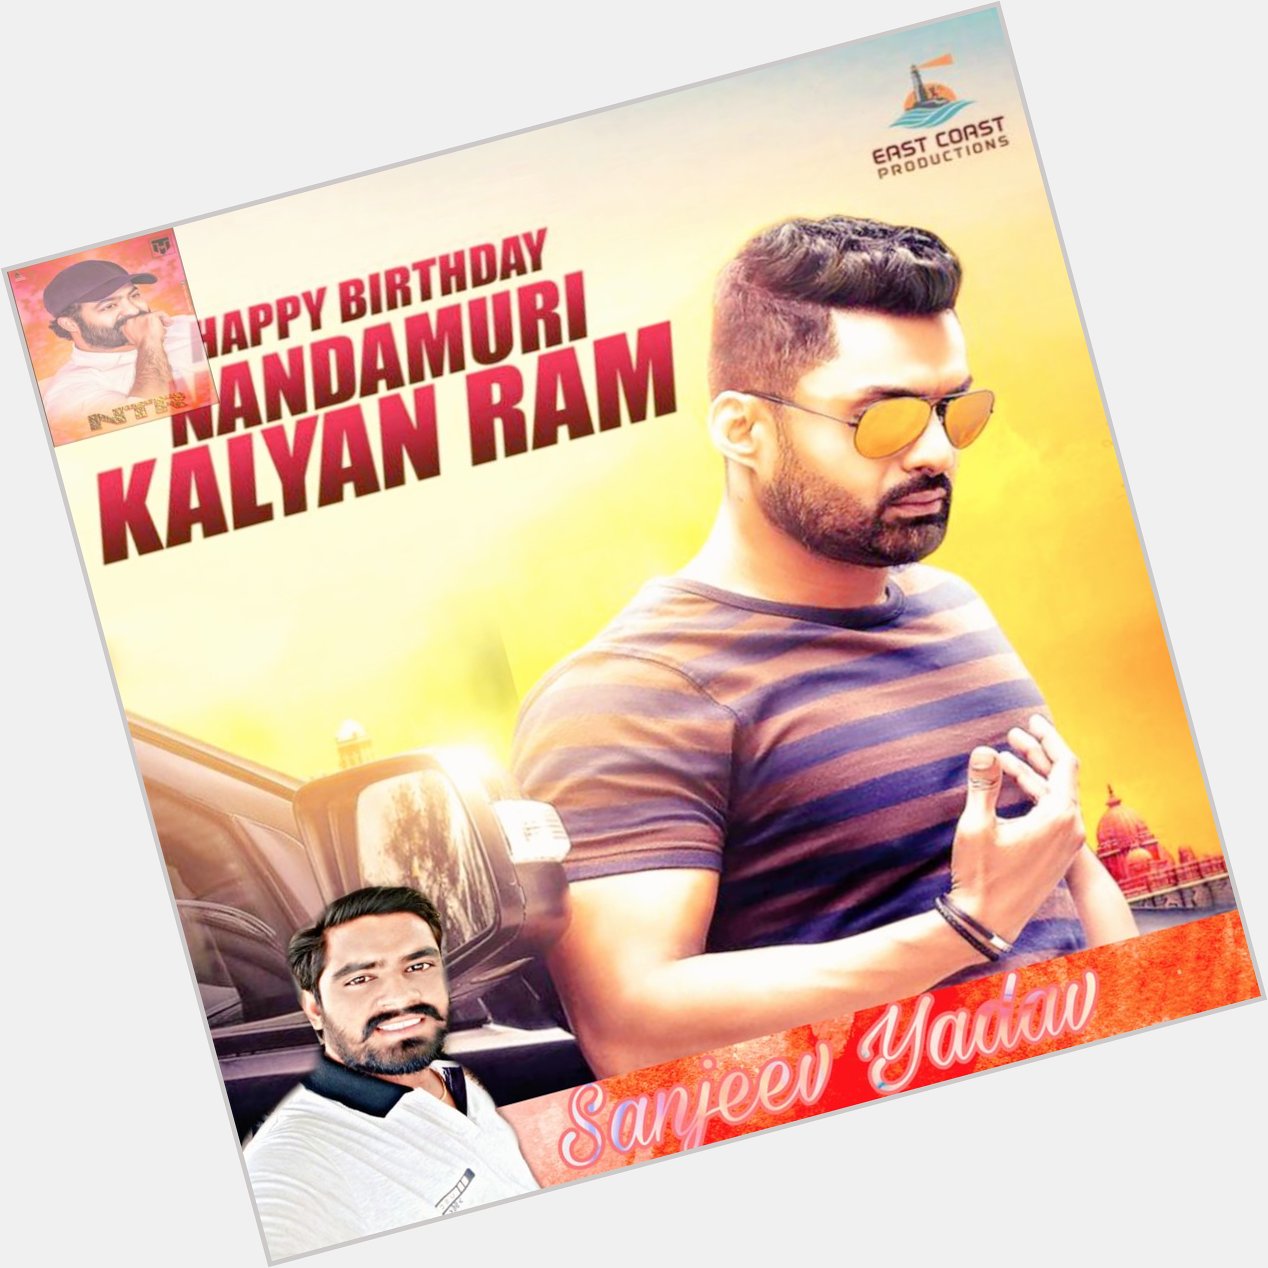 Happy birthday Kalyan ram   